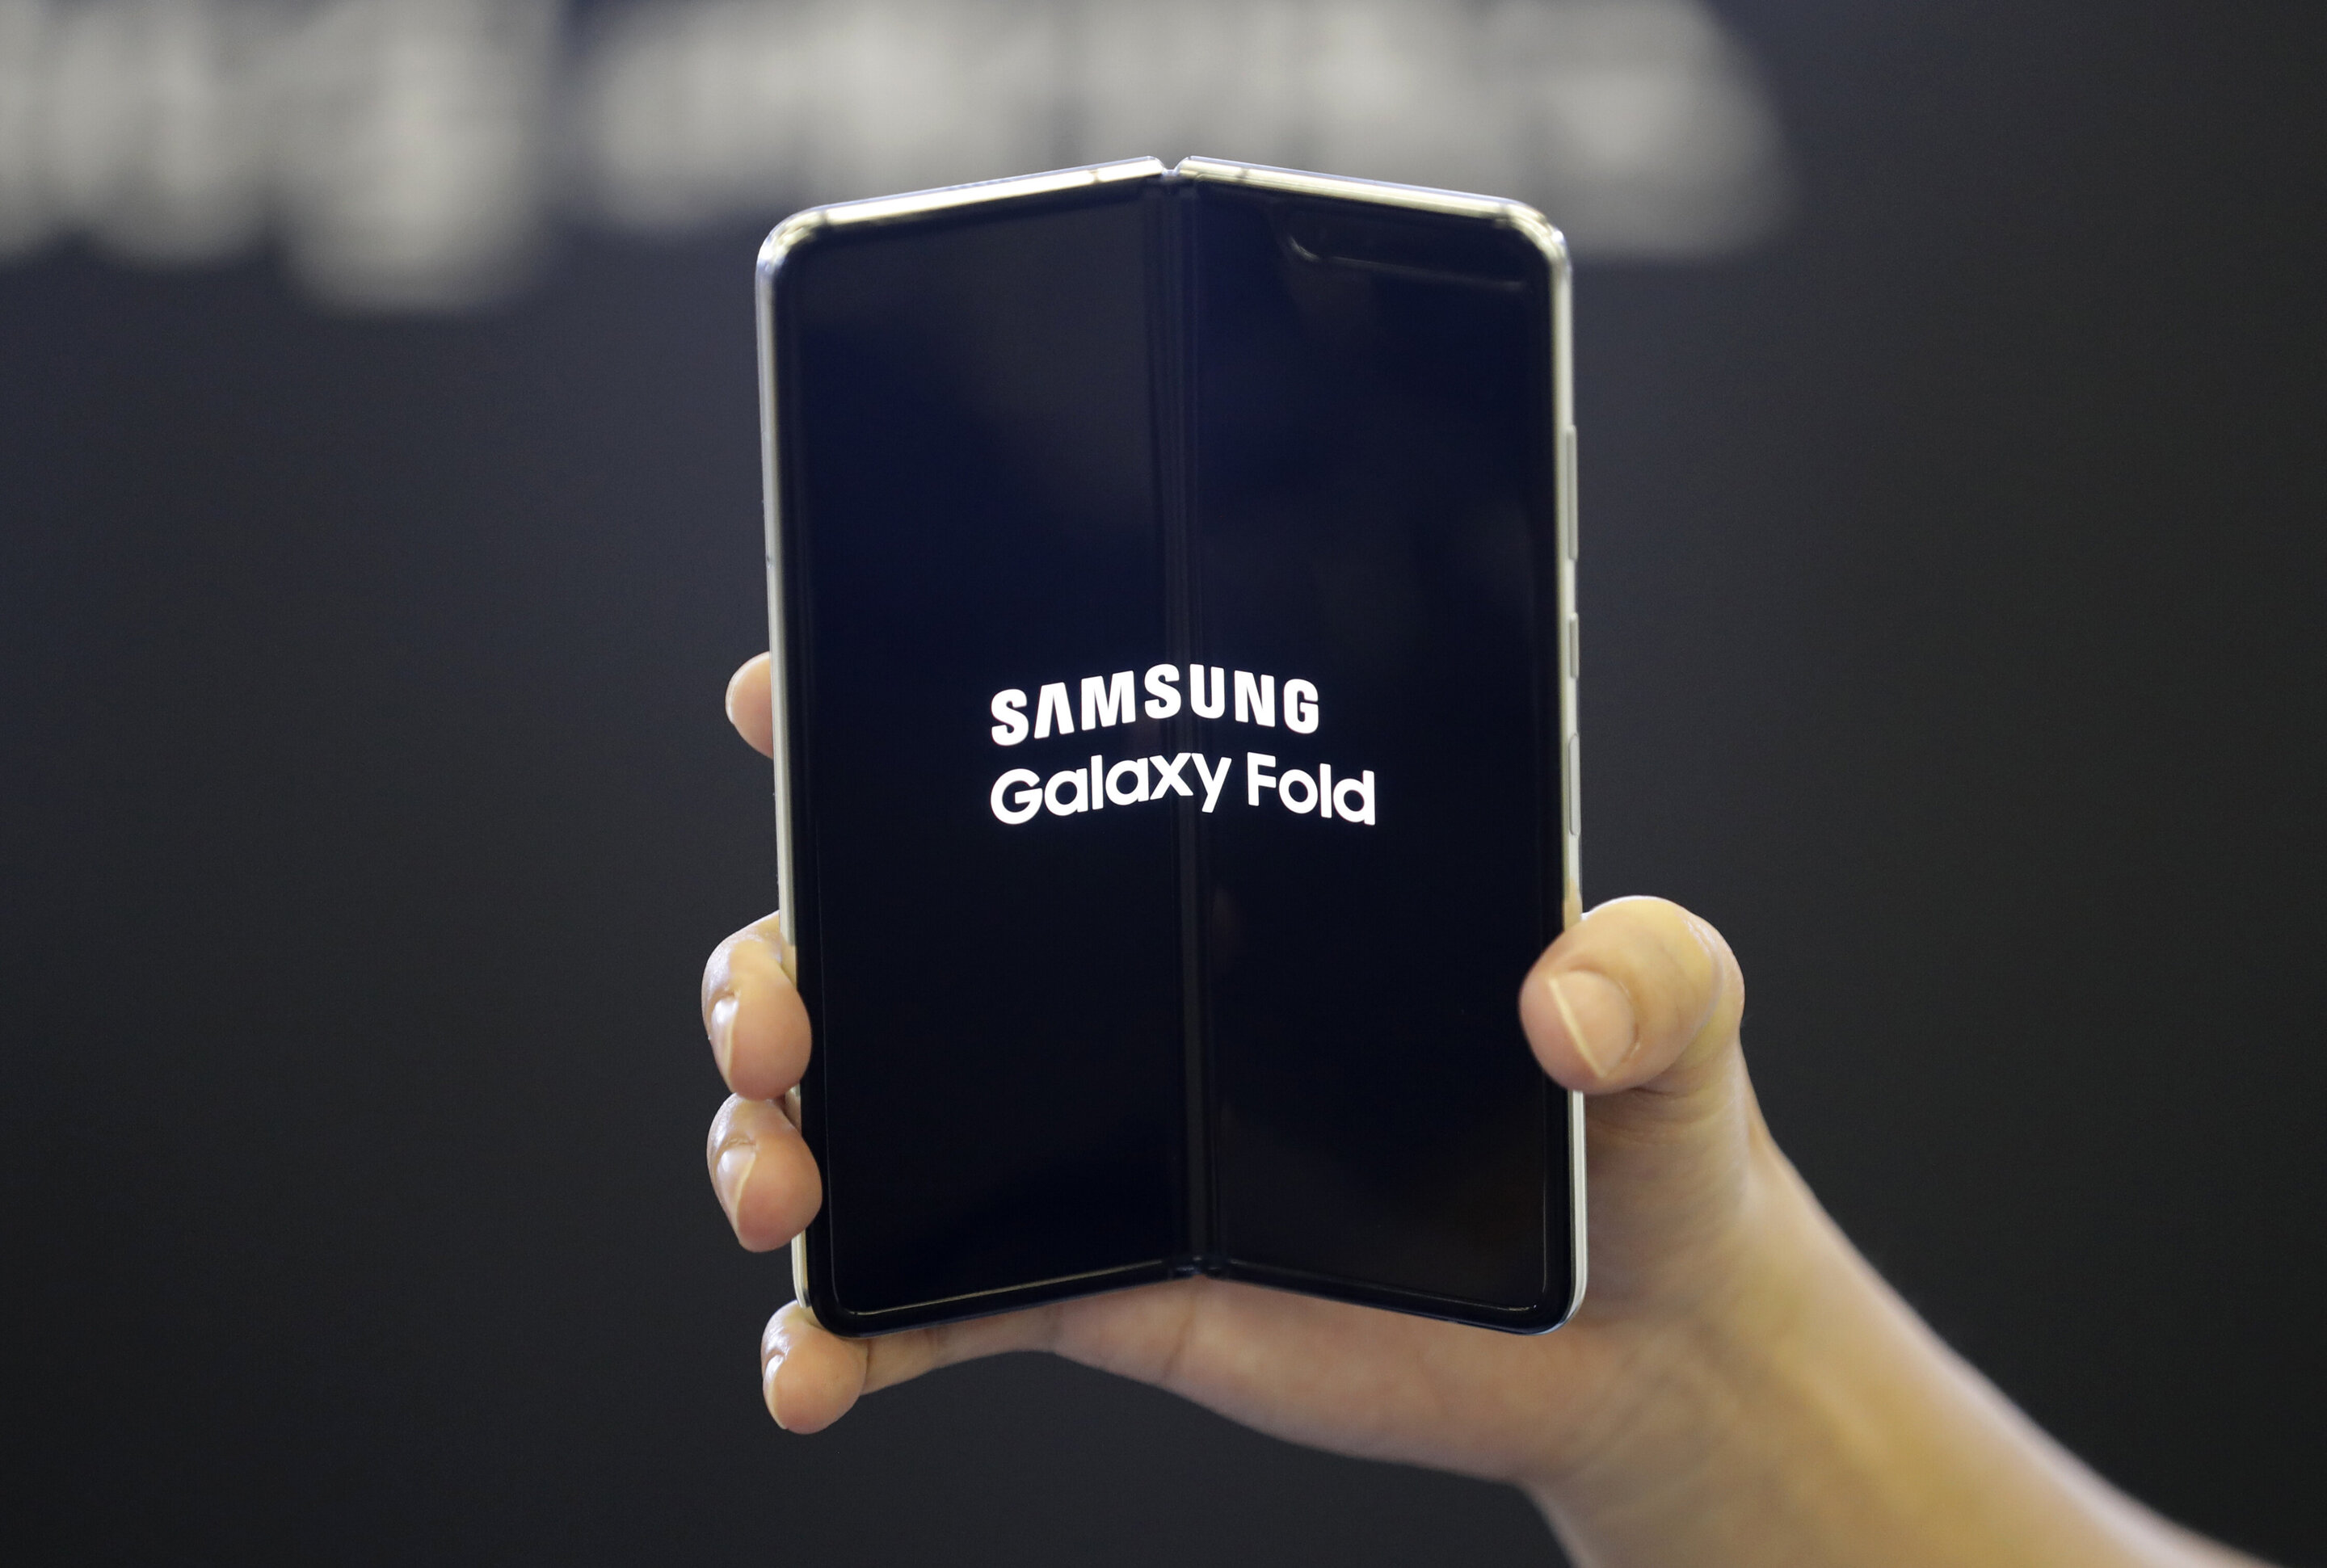 Samsung Galaxy S Fold